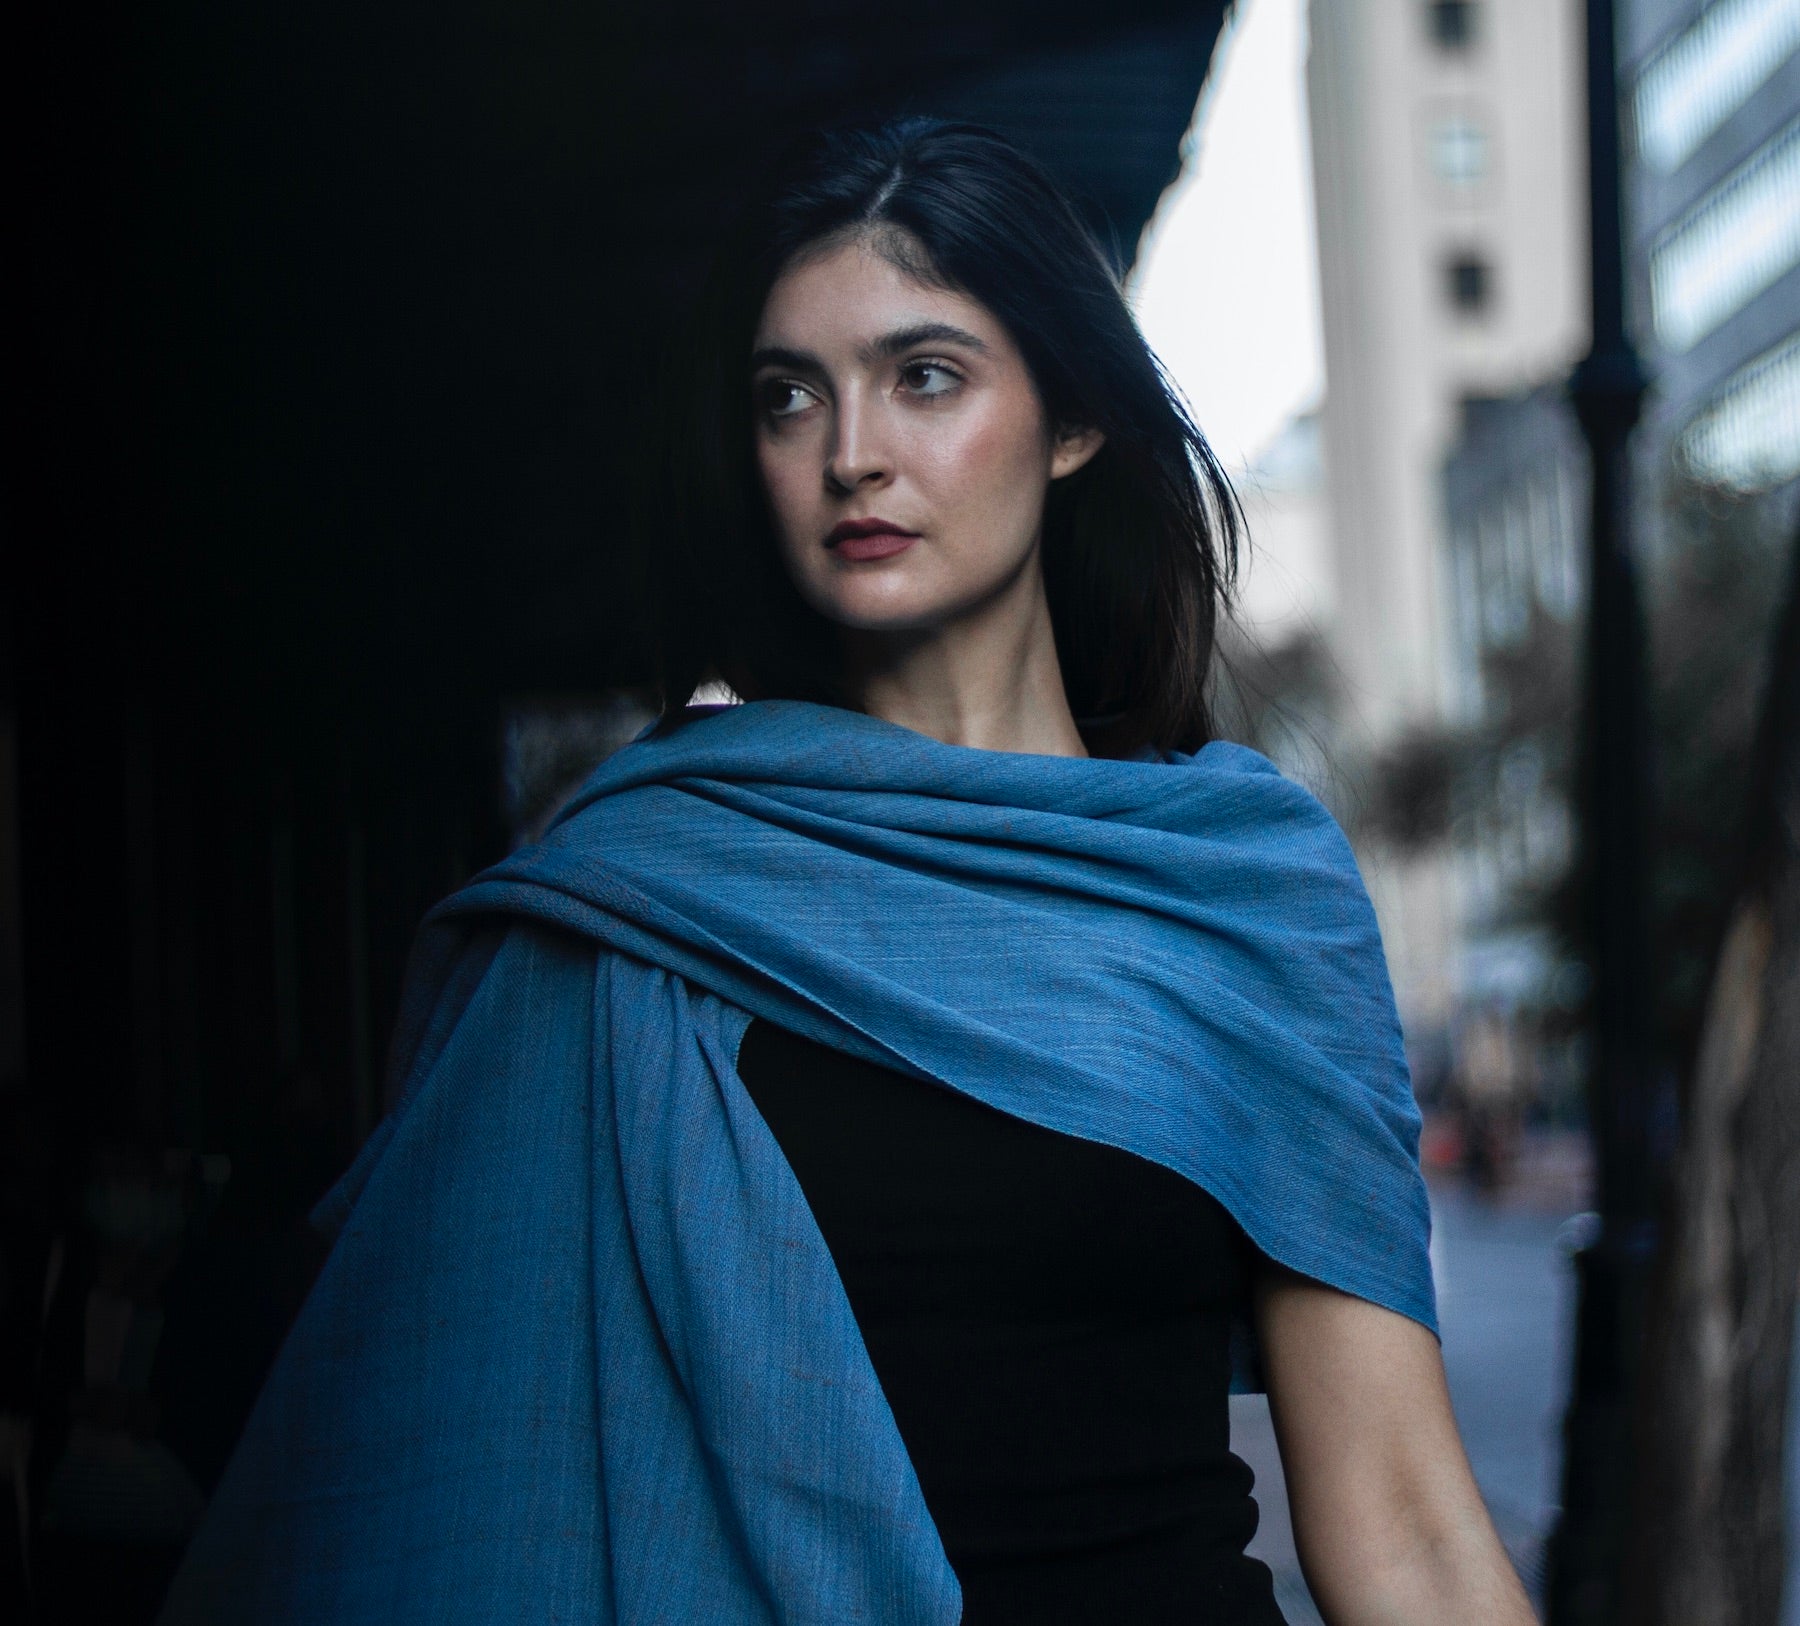 indigo dyed silk blue scarf with macrame fringe 